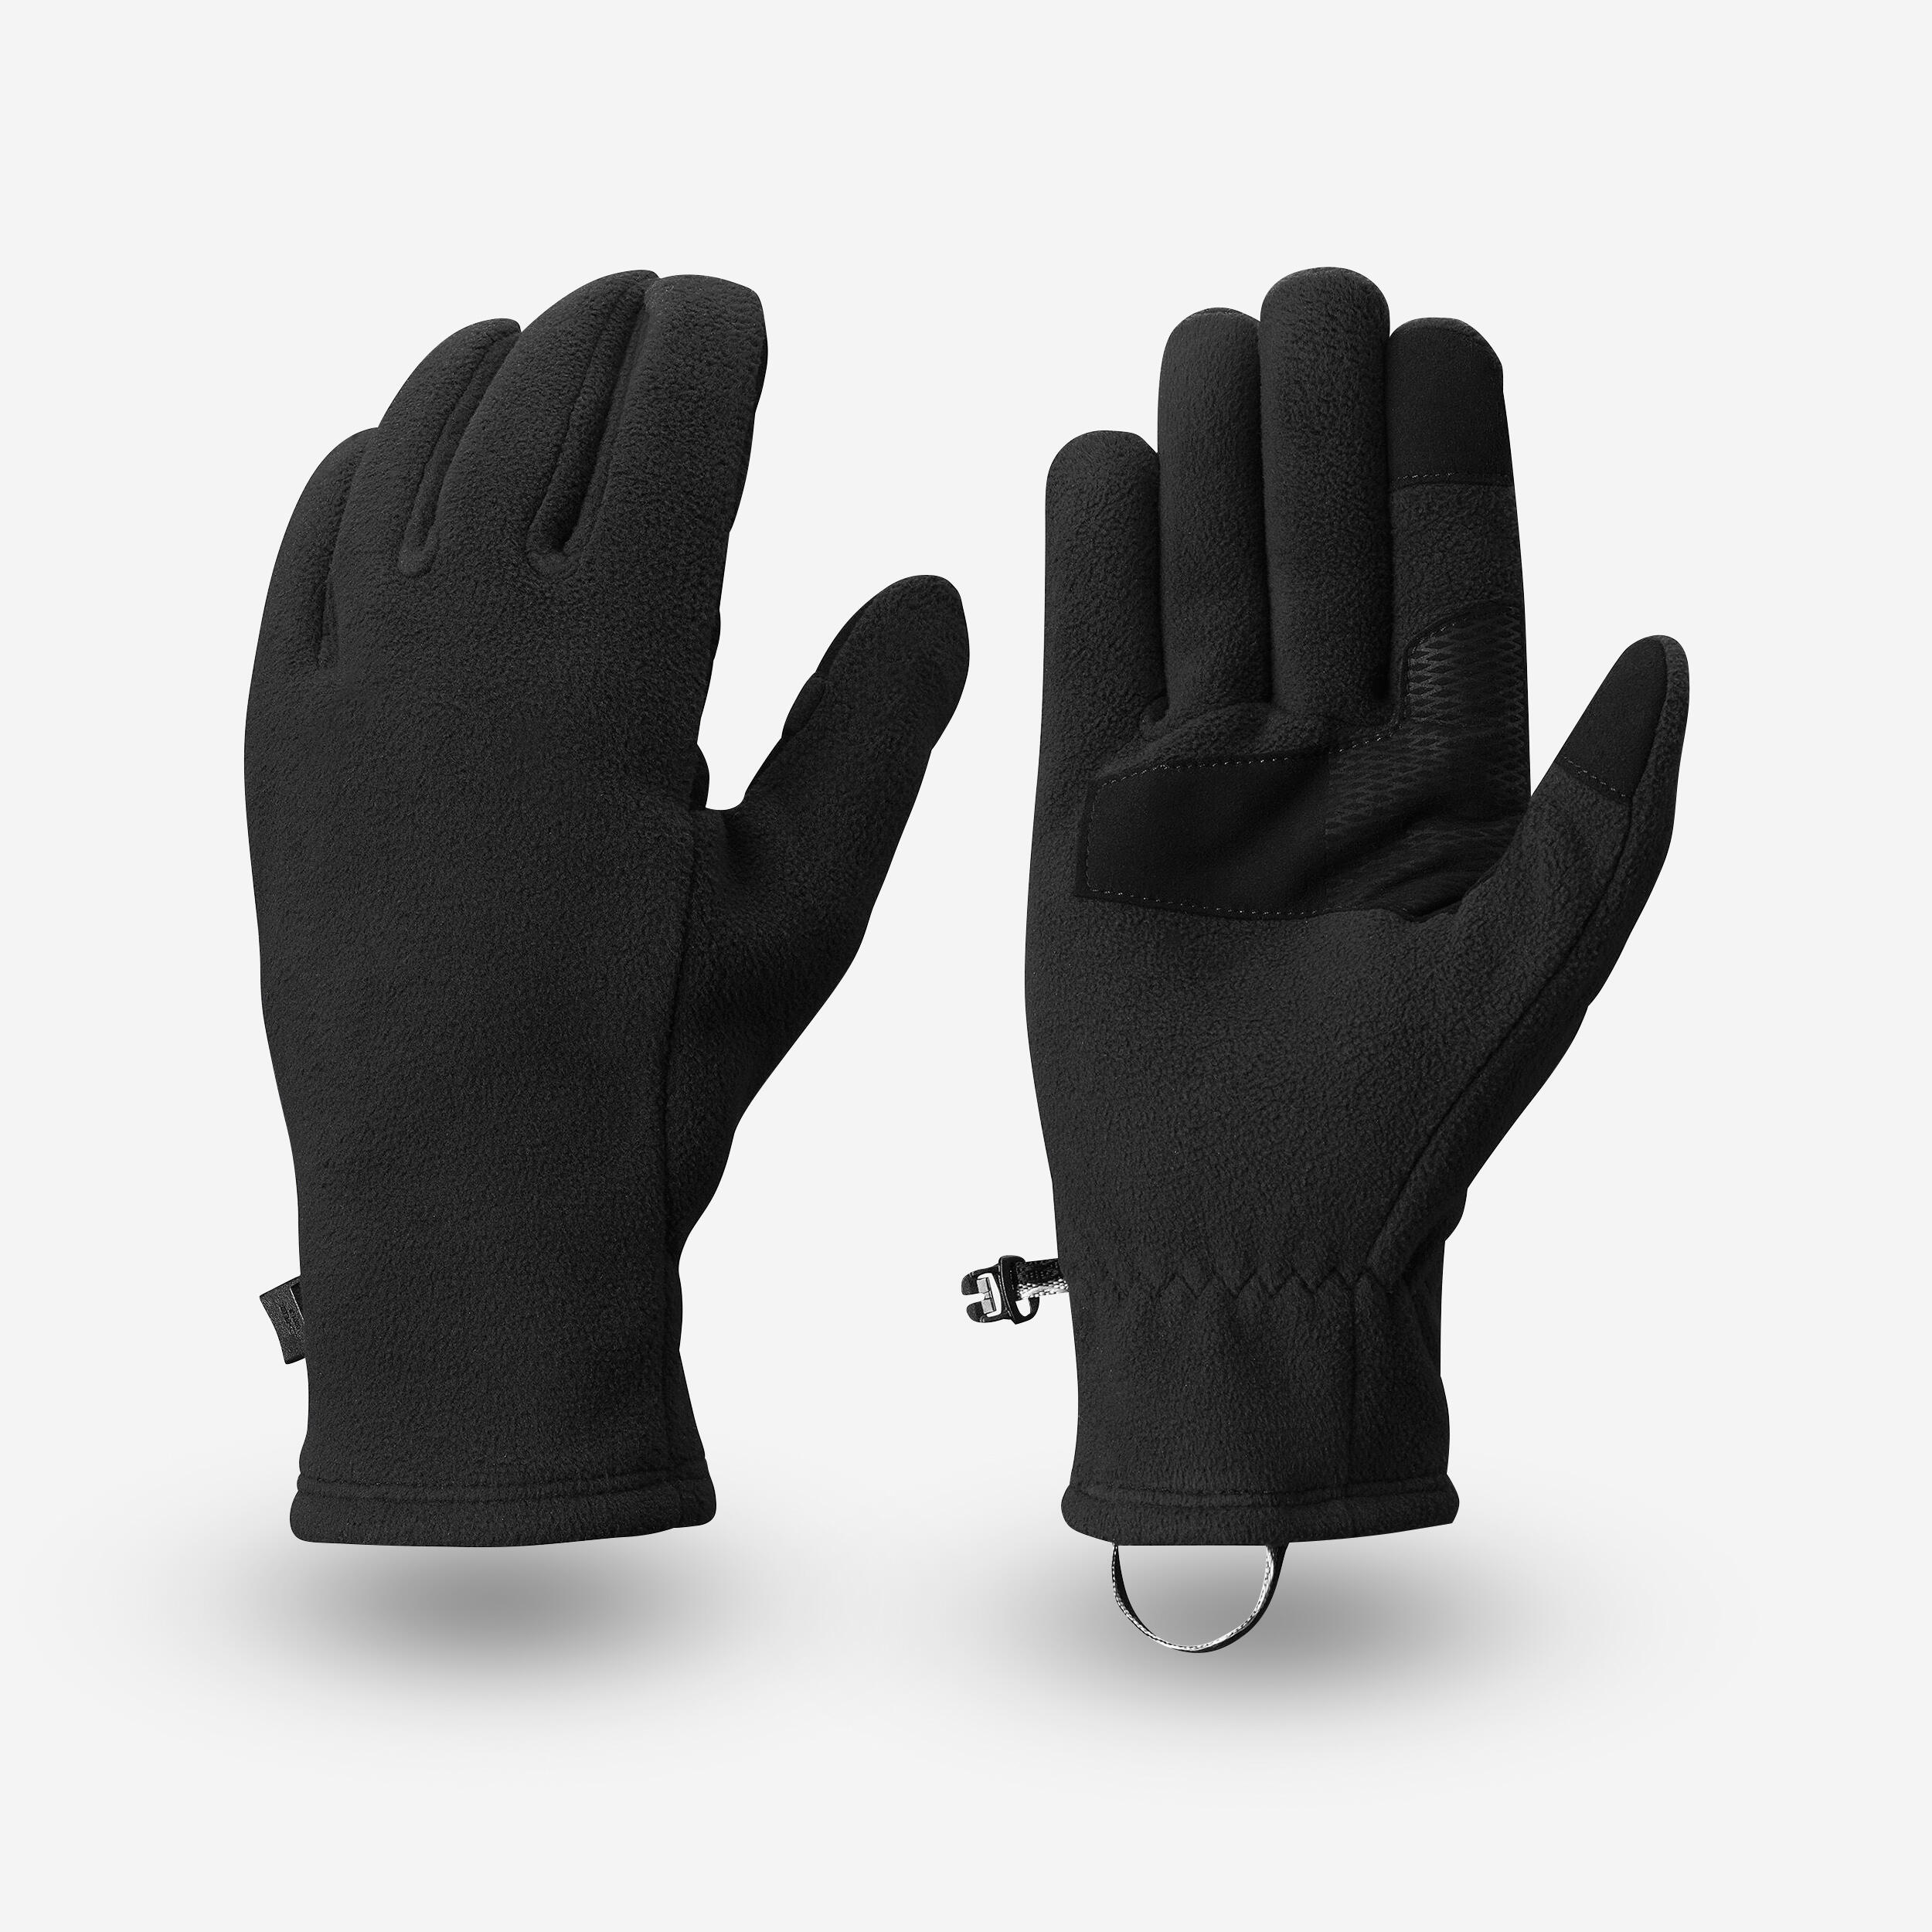 gants polaire de trekking montagne - mt500 noir - adulte - forclaz